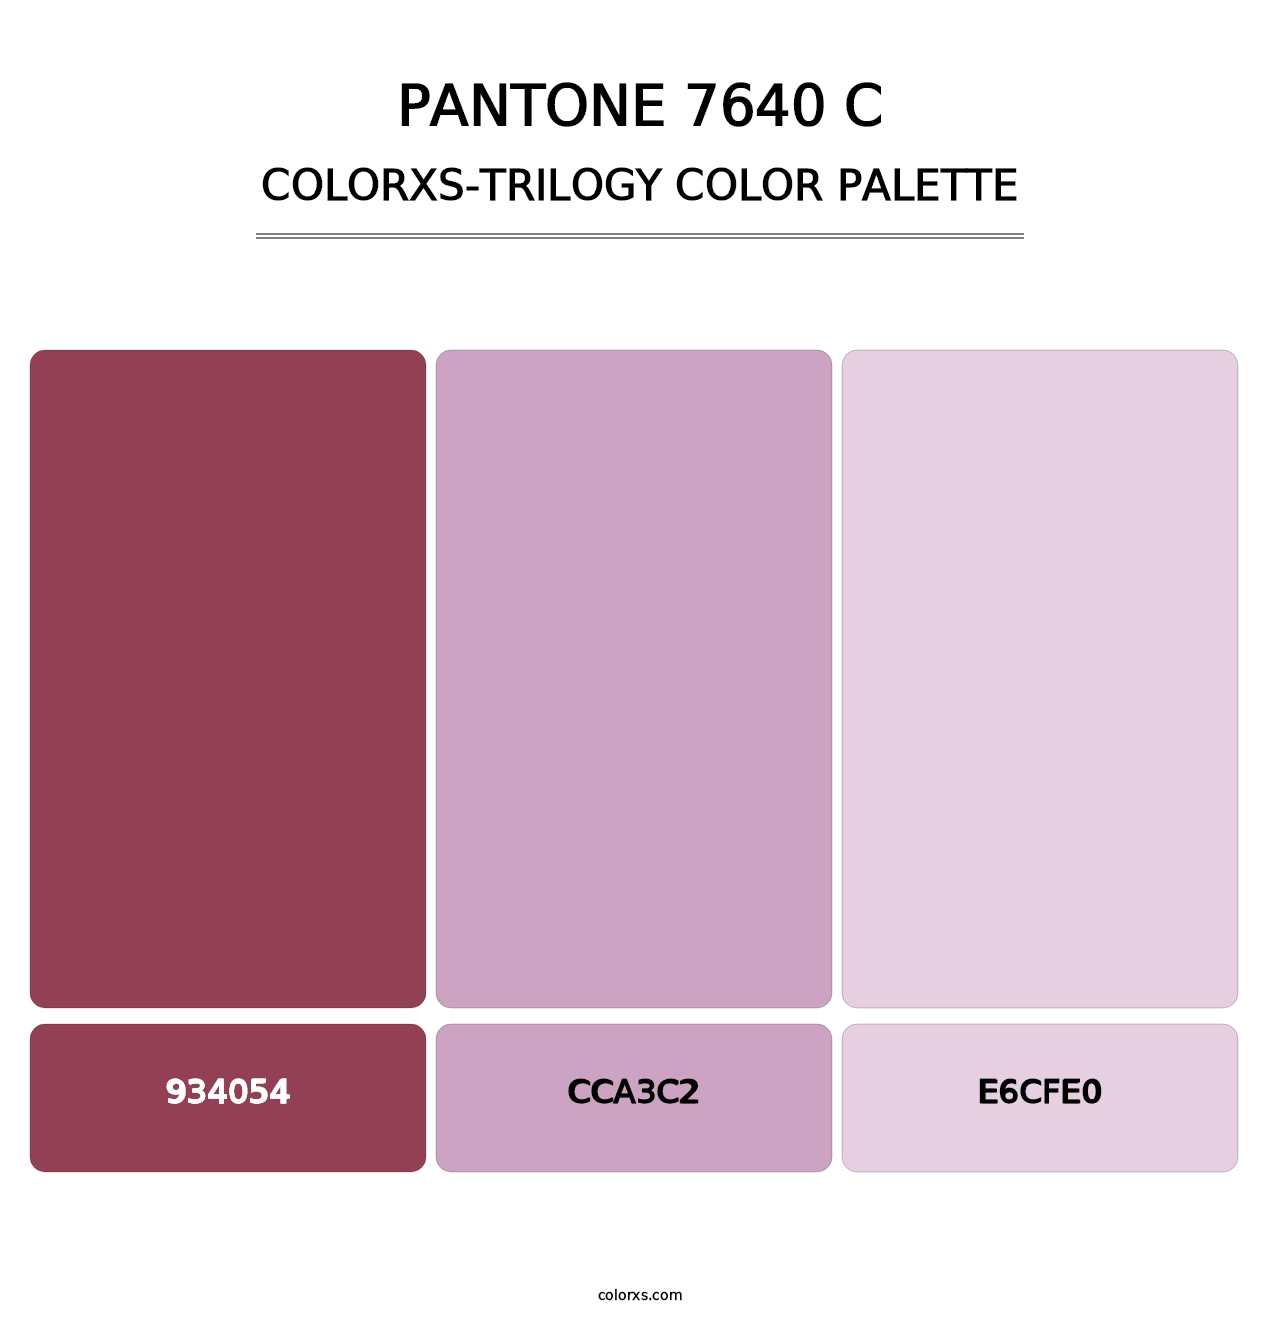 PANTONE 7640 C - Colorxs Trilogy Palette